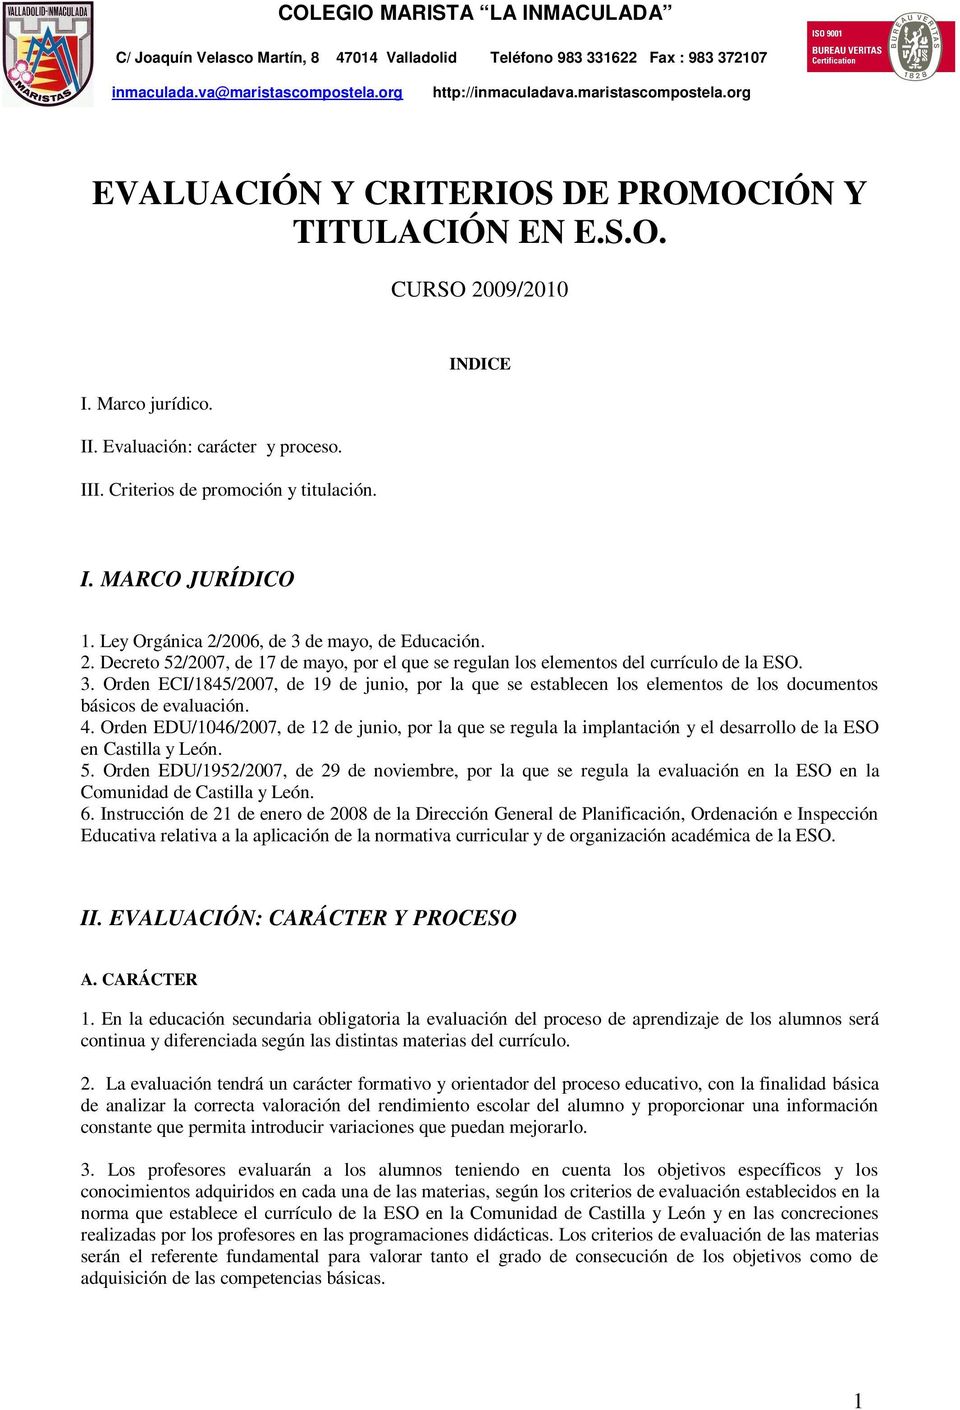 4. Orden EDU/1046/2007, de 12 de junio, por la que se regula la implantación y el desarrollo de la ESO en Castilla y León. 5.